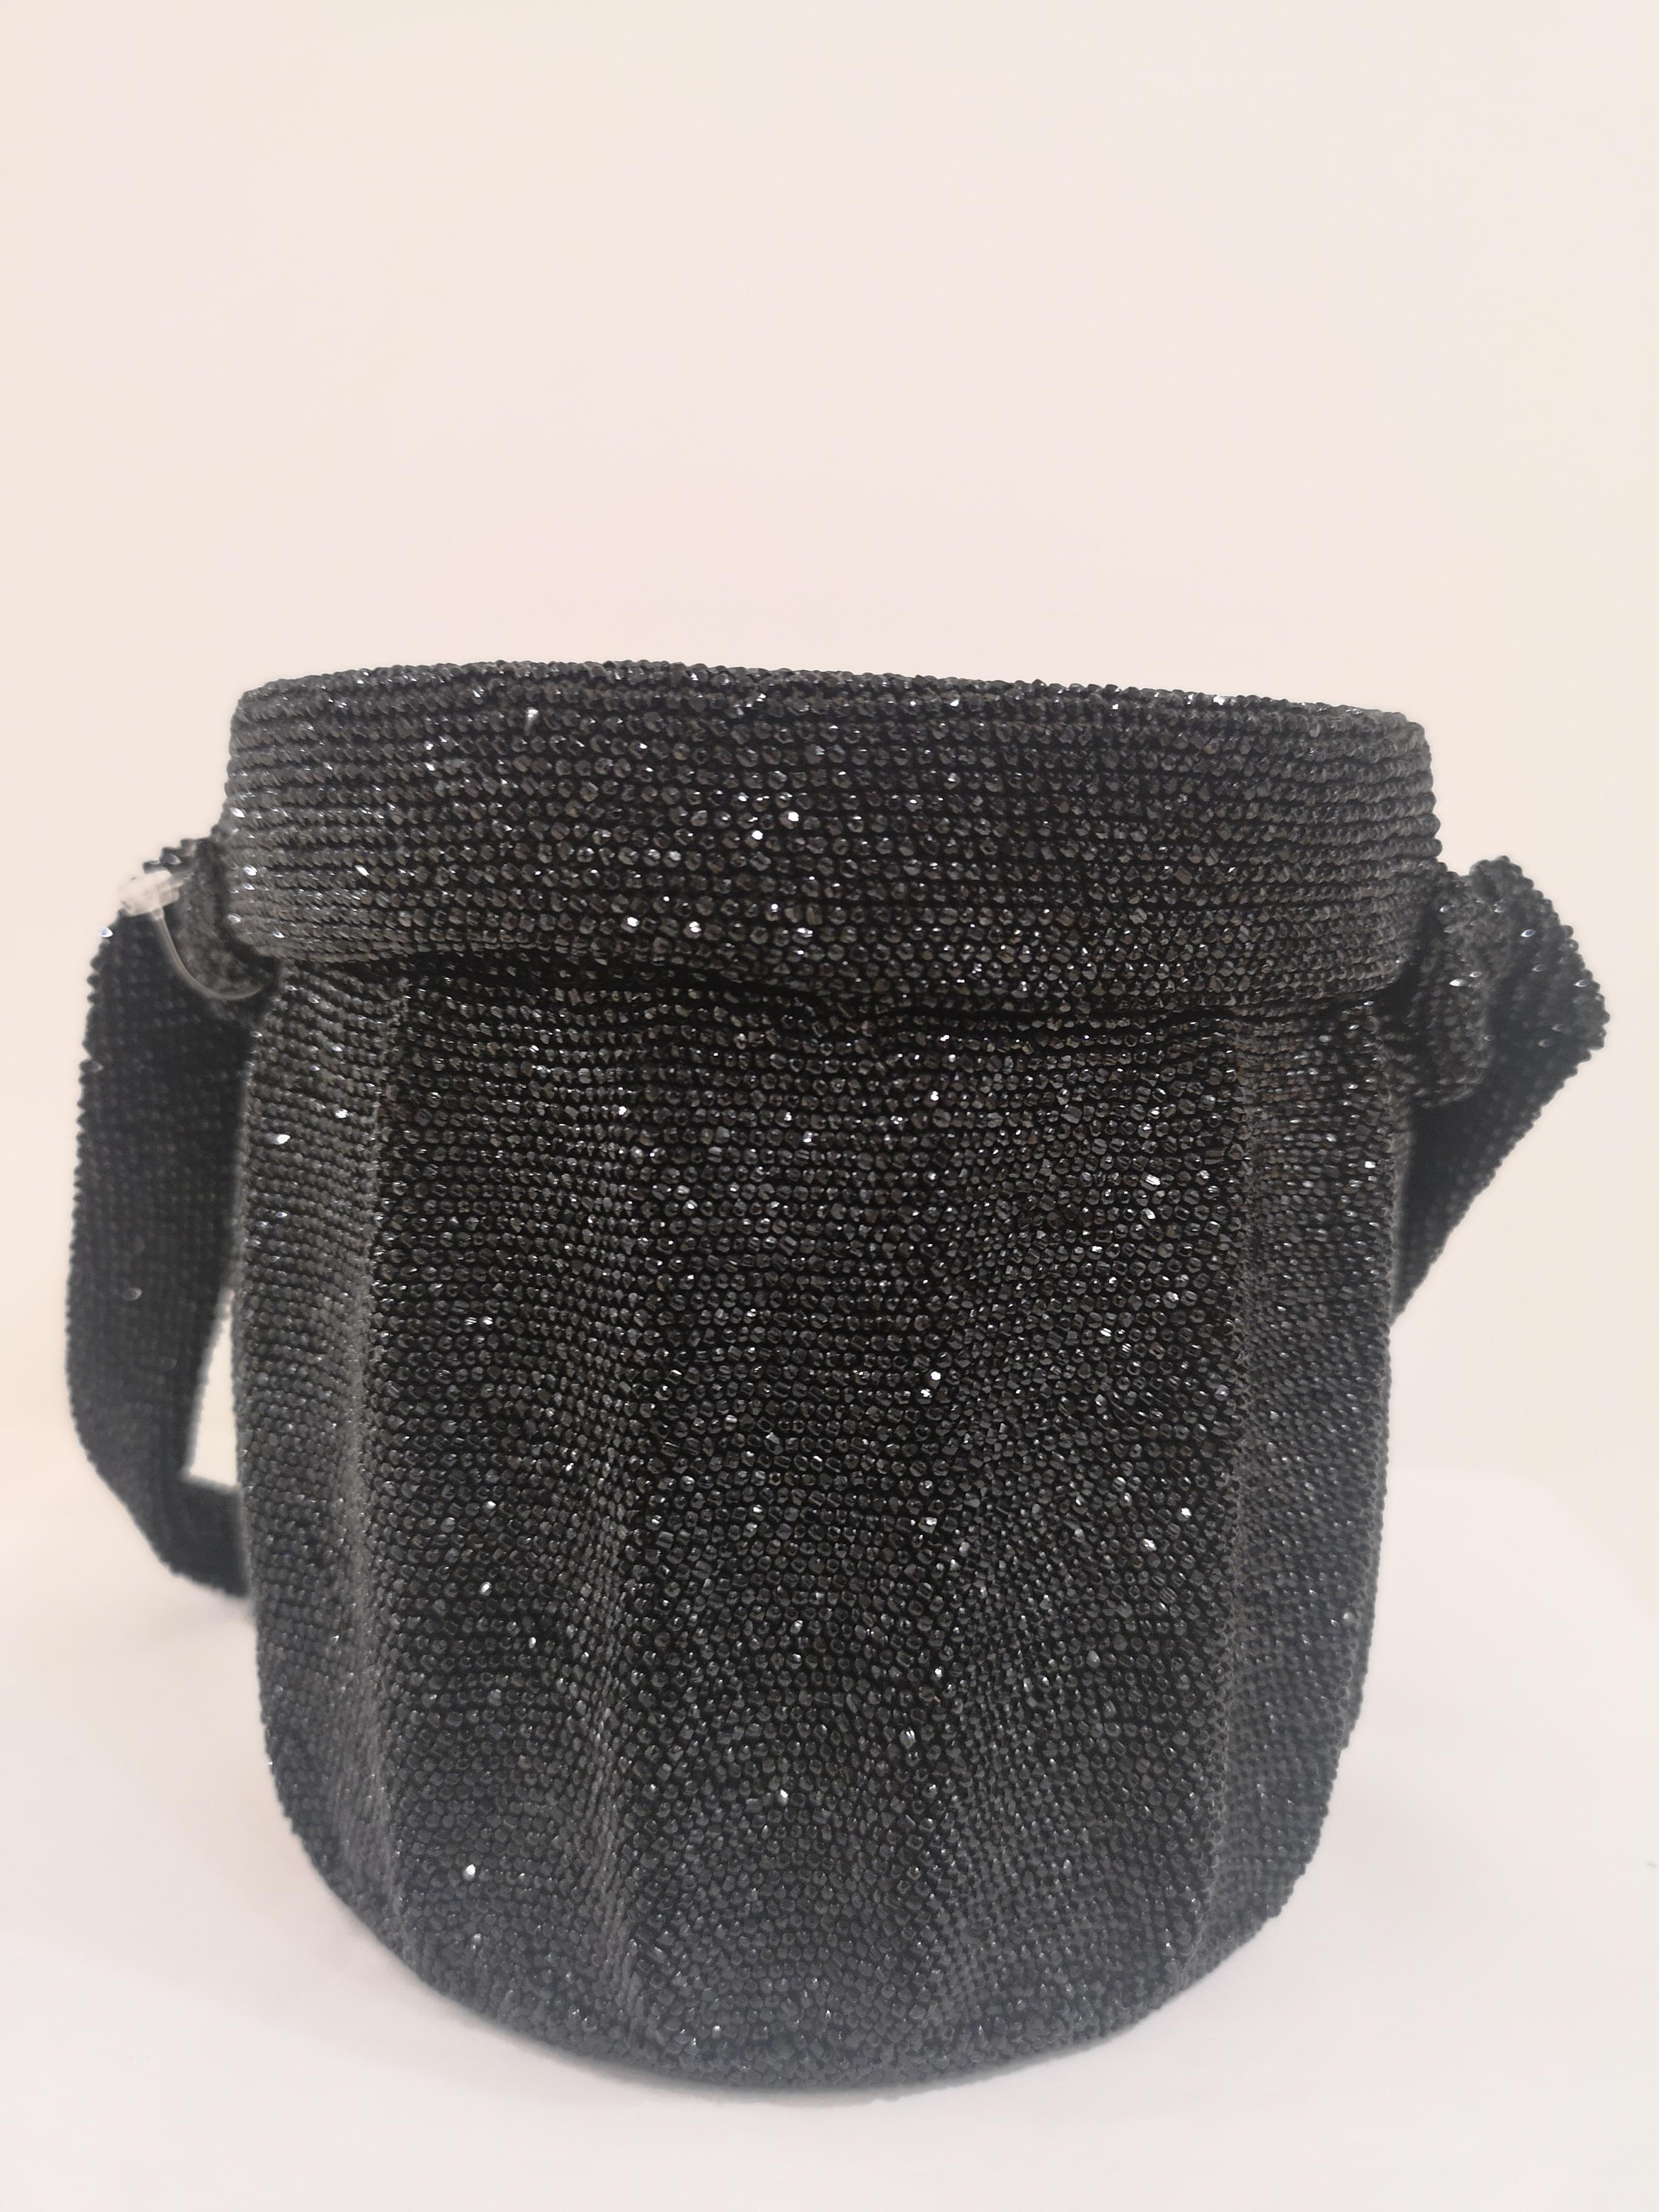 Women's or Men's 1980s Black beads satchel